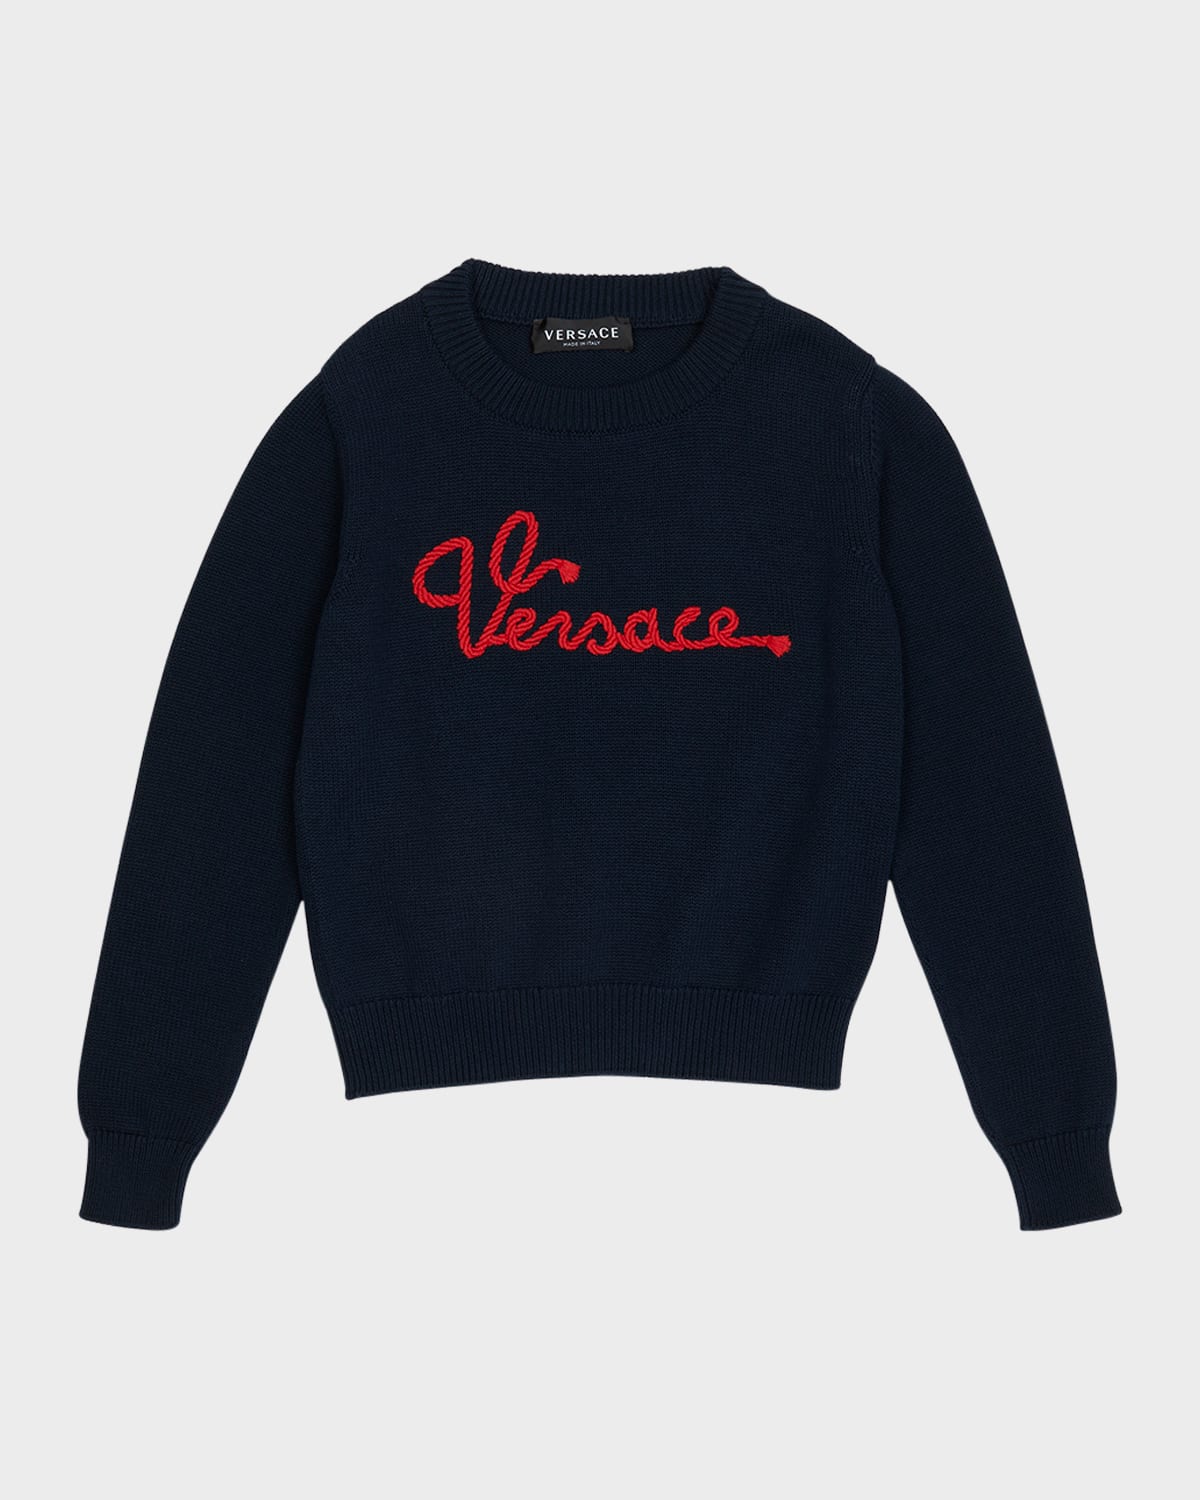 Versace Kids' Boy's Marine Logo Cotton Knit Sweater In Navy Blue